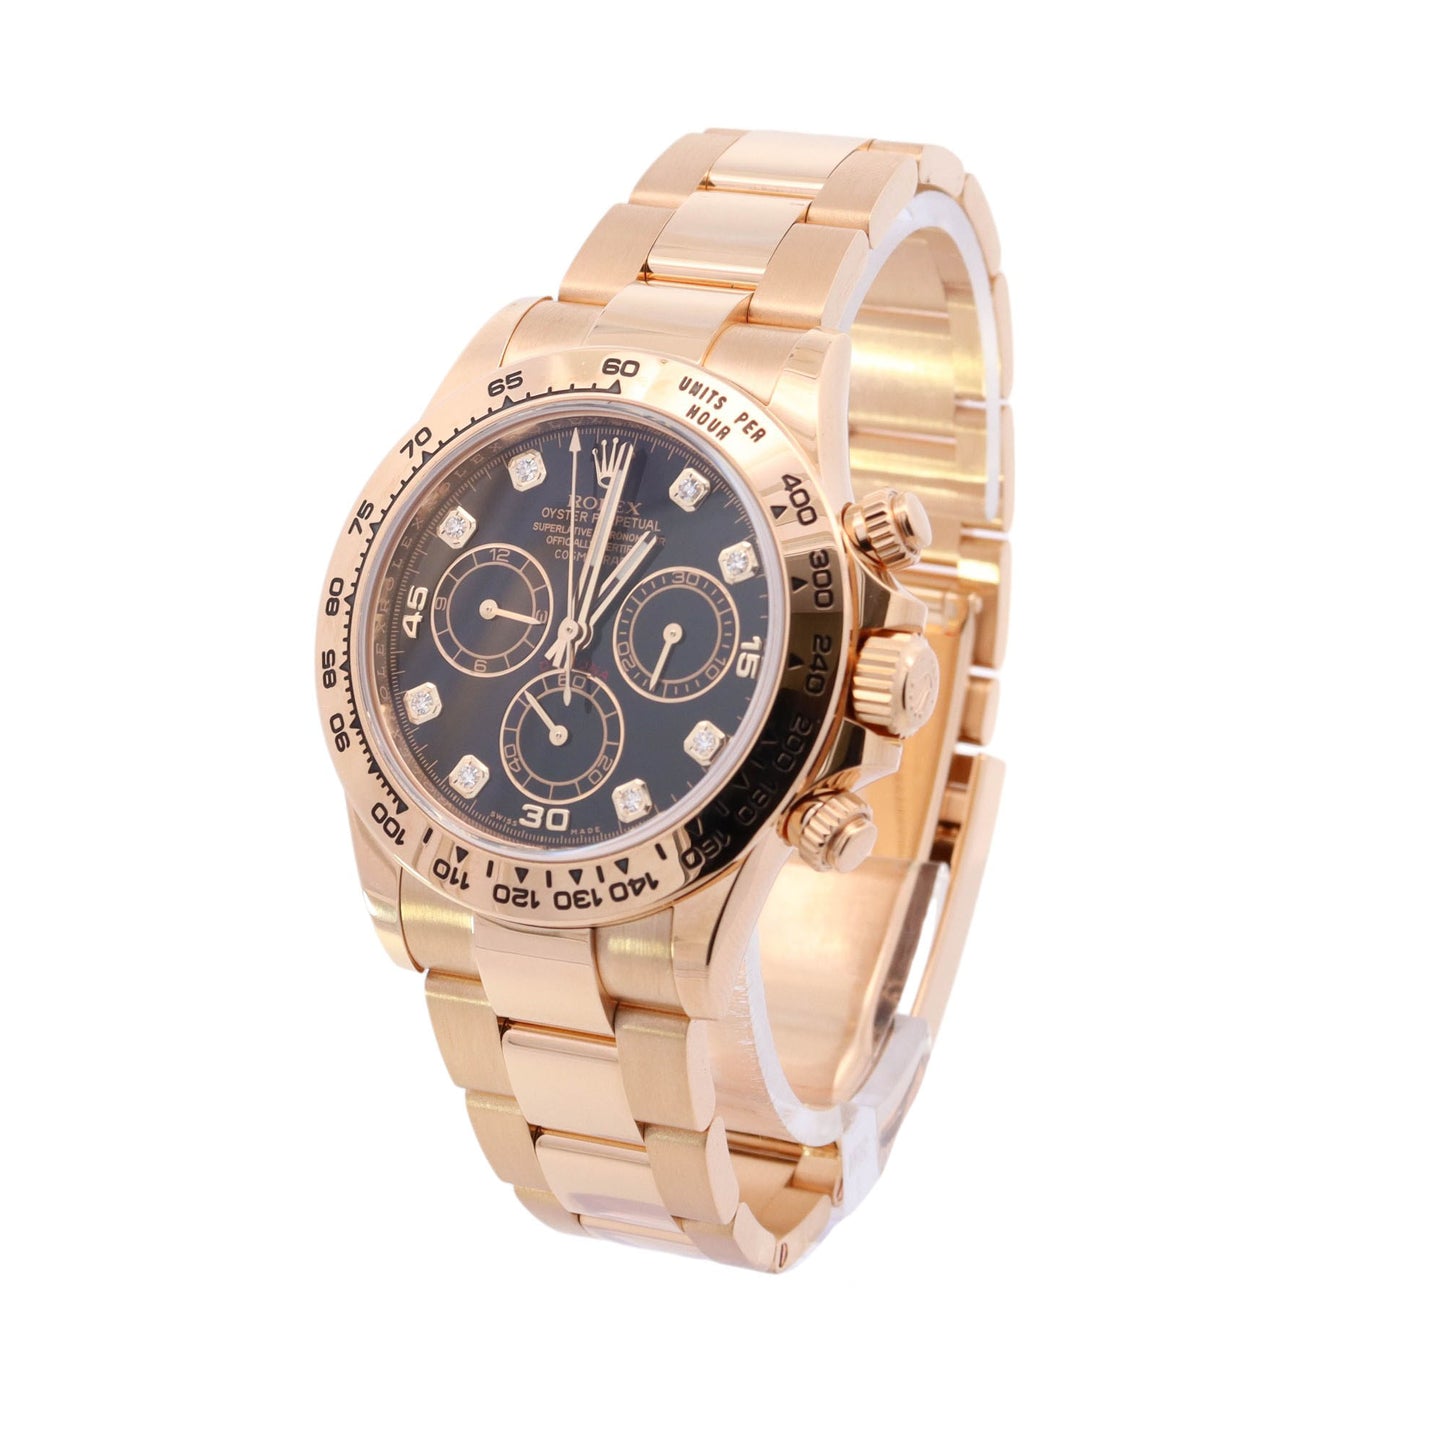 Rolex Daytona 40mm Yellow Gold Black Diamond Dial Watch Reference #: 116508 - Happy Jewelers Fine Jewelry Lifetime Warranty